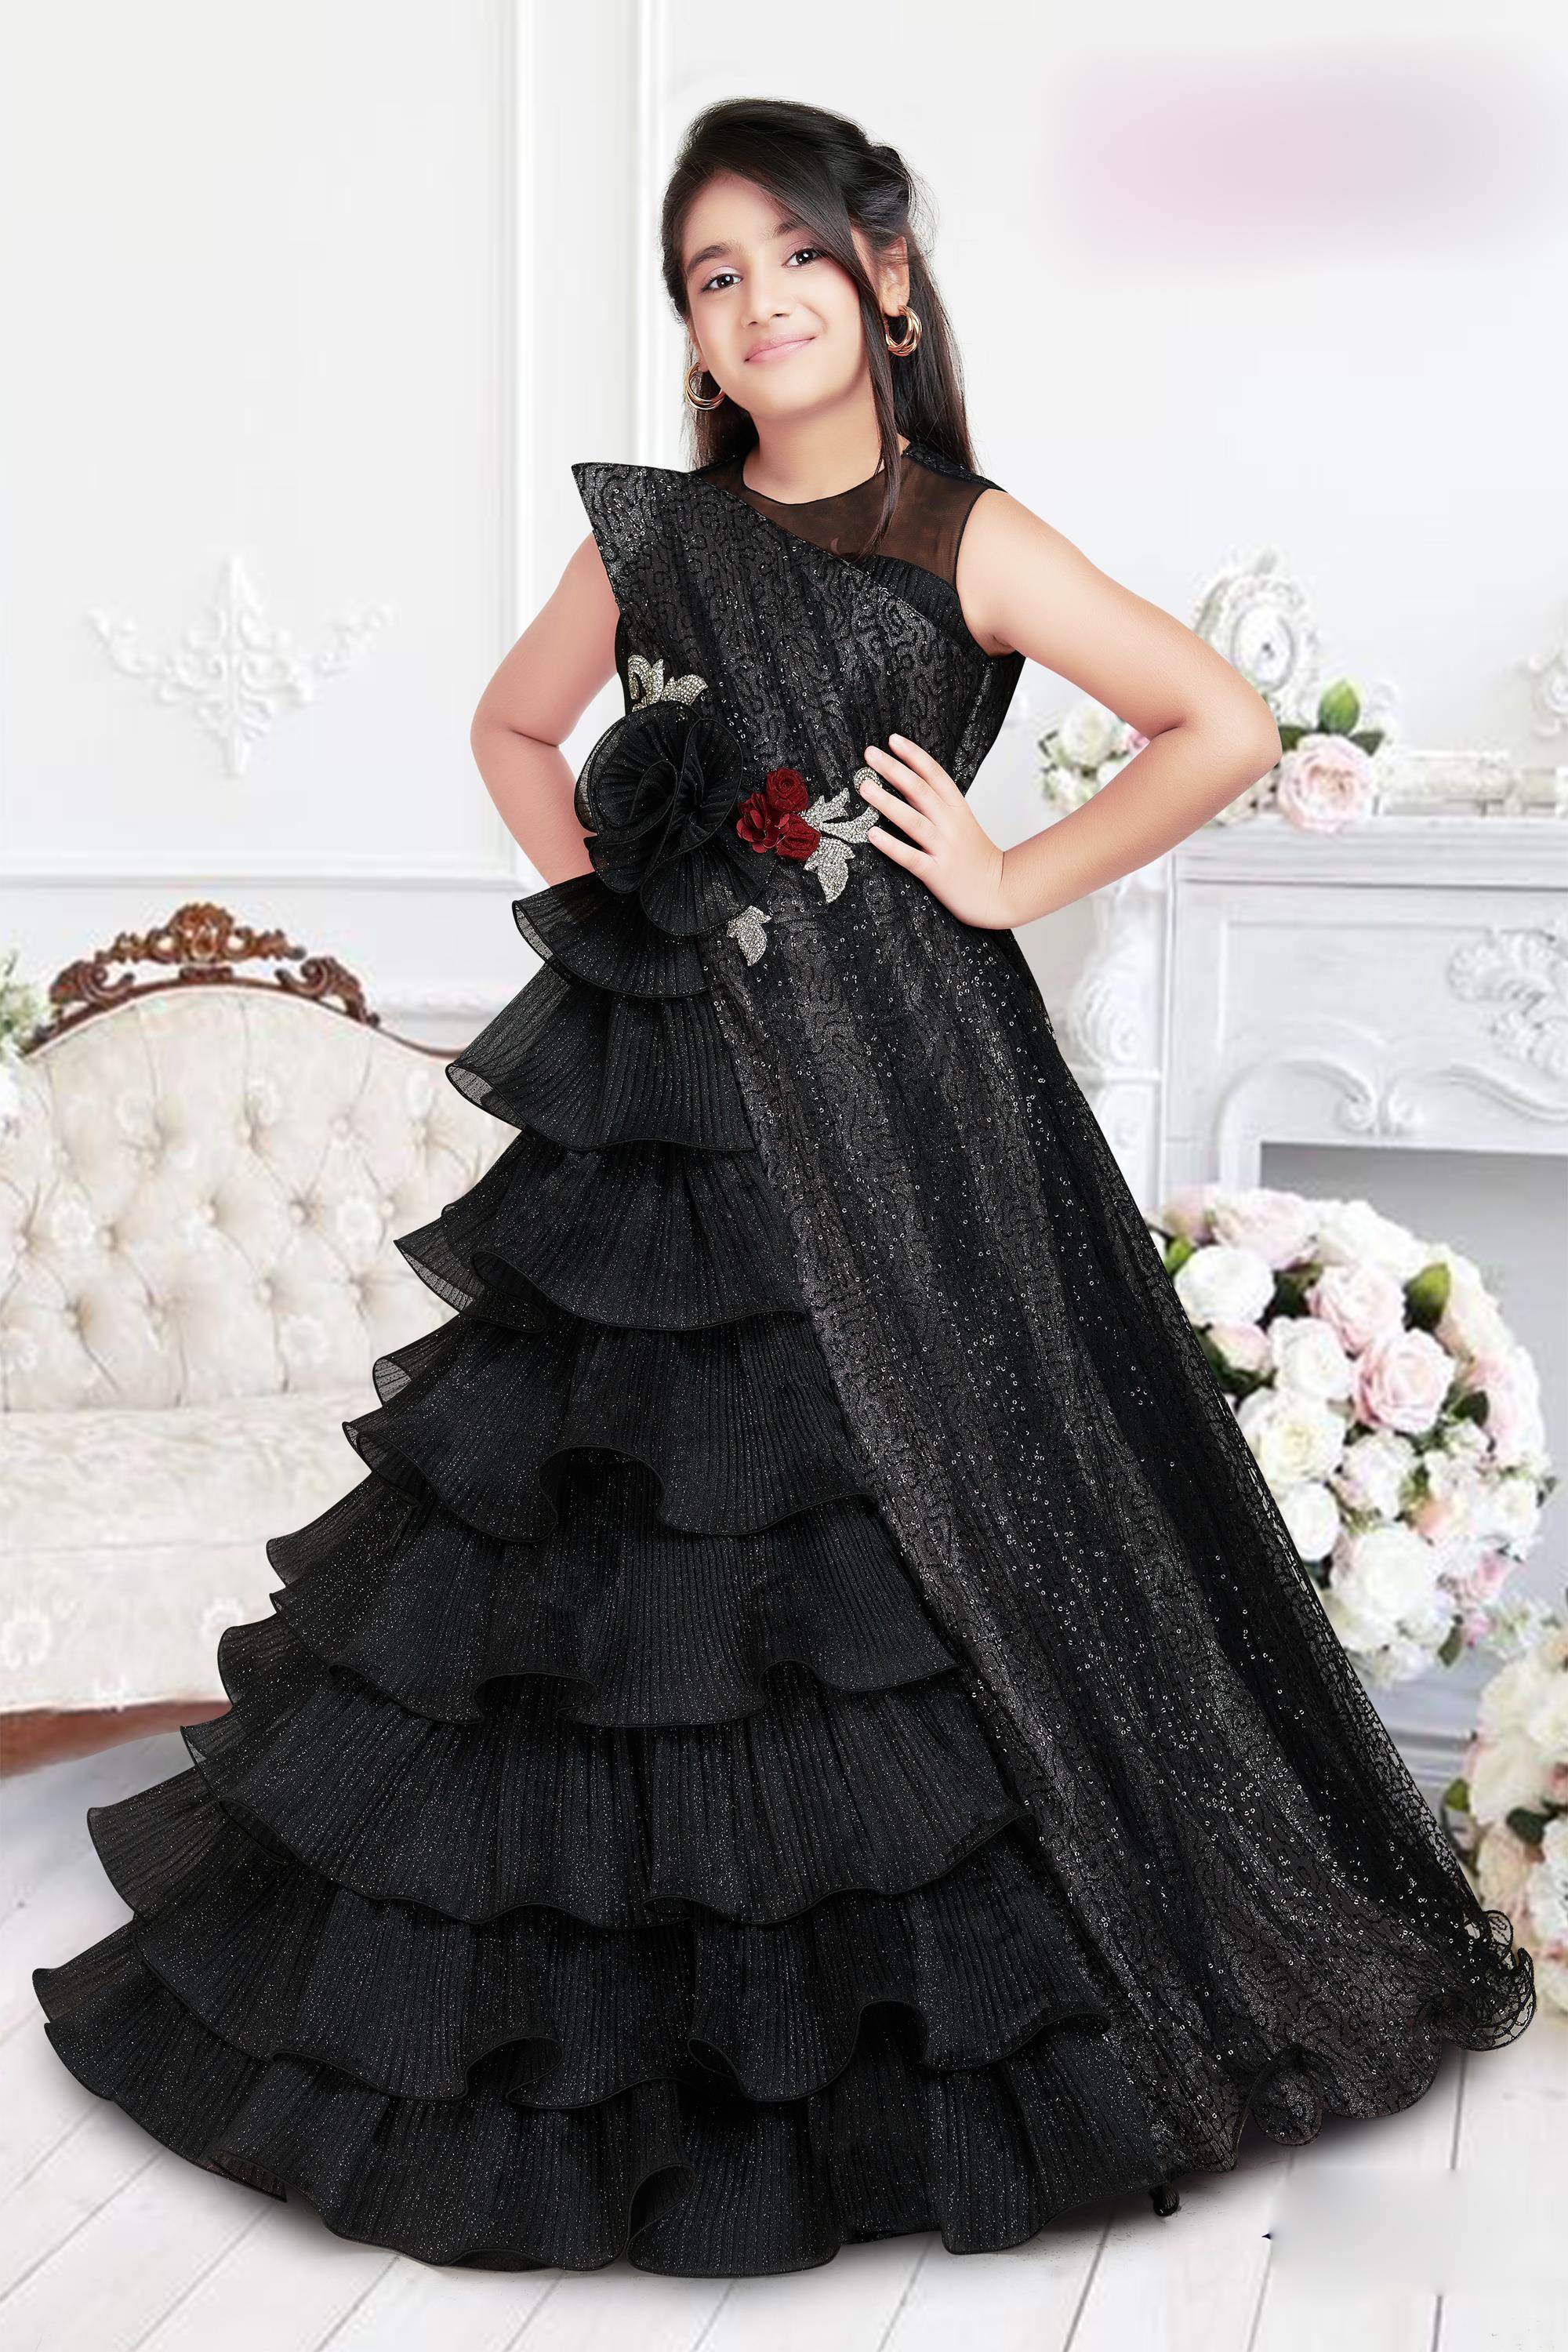 Raksha Bandhan Gown For Girls With Price Buy Online 2023-hkpdtq2012.edu.vn